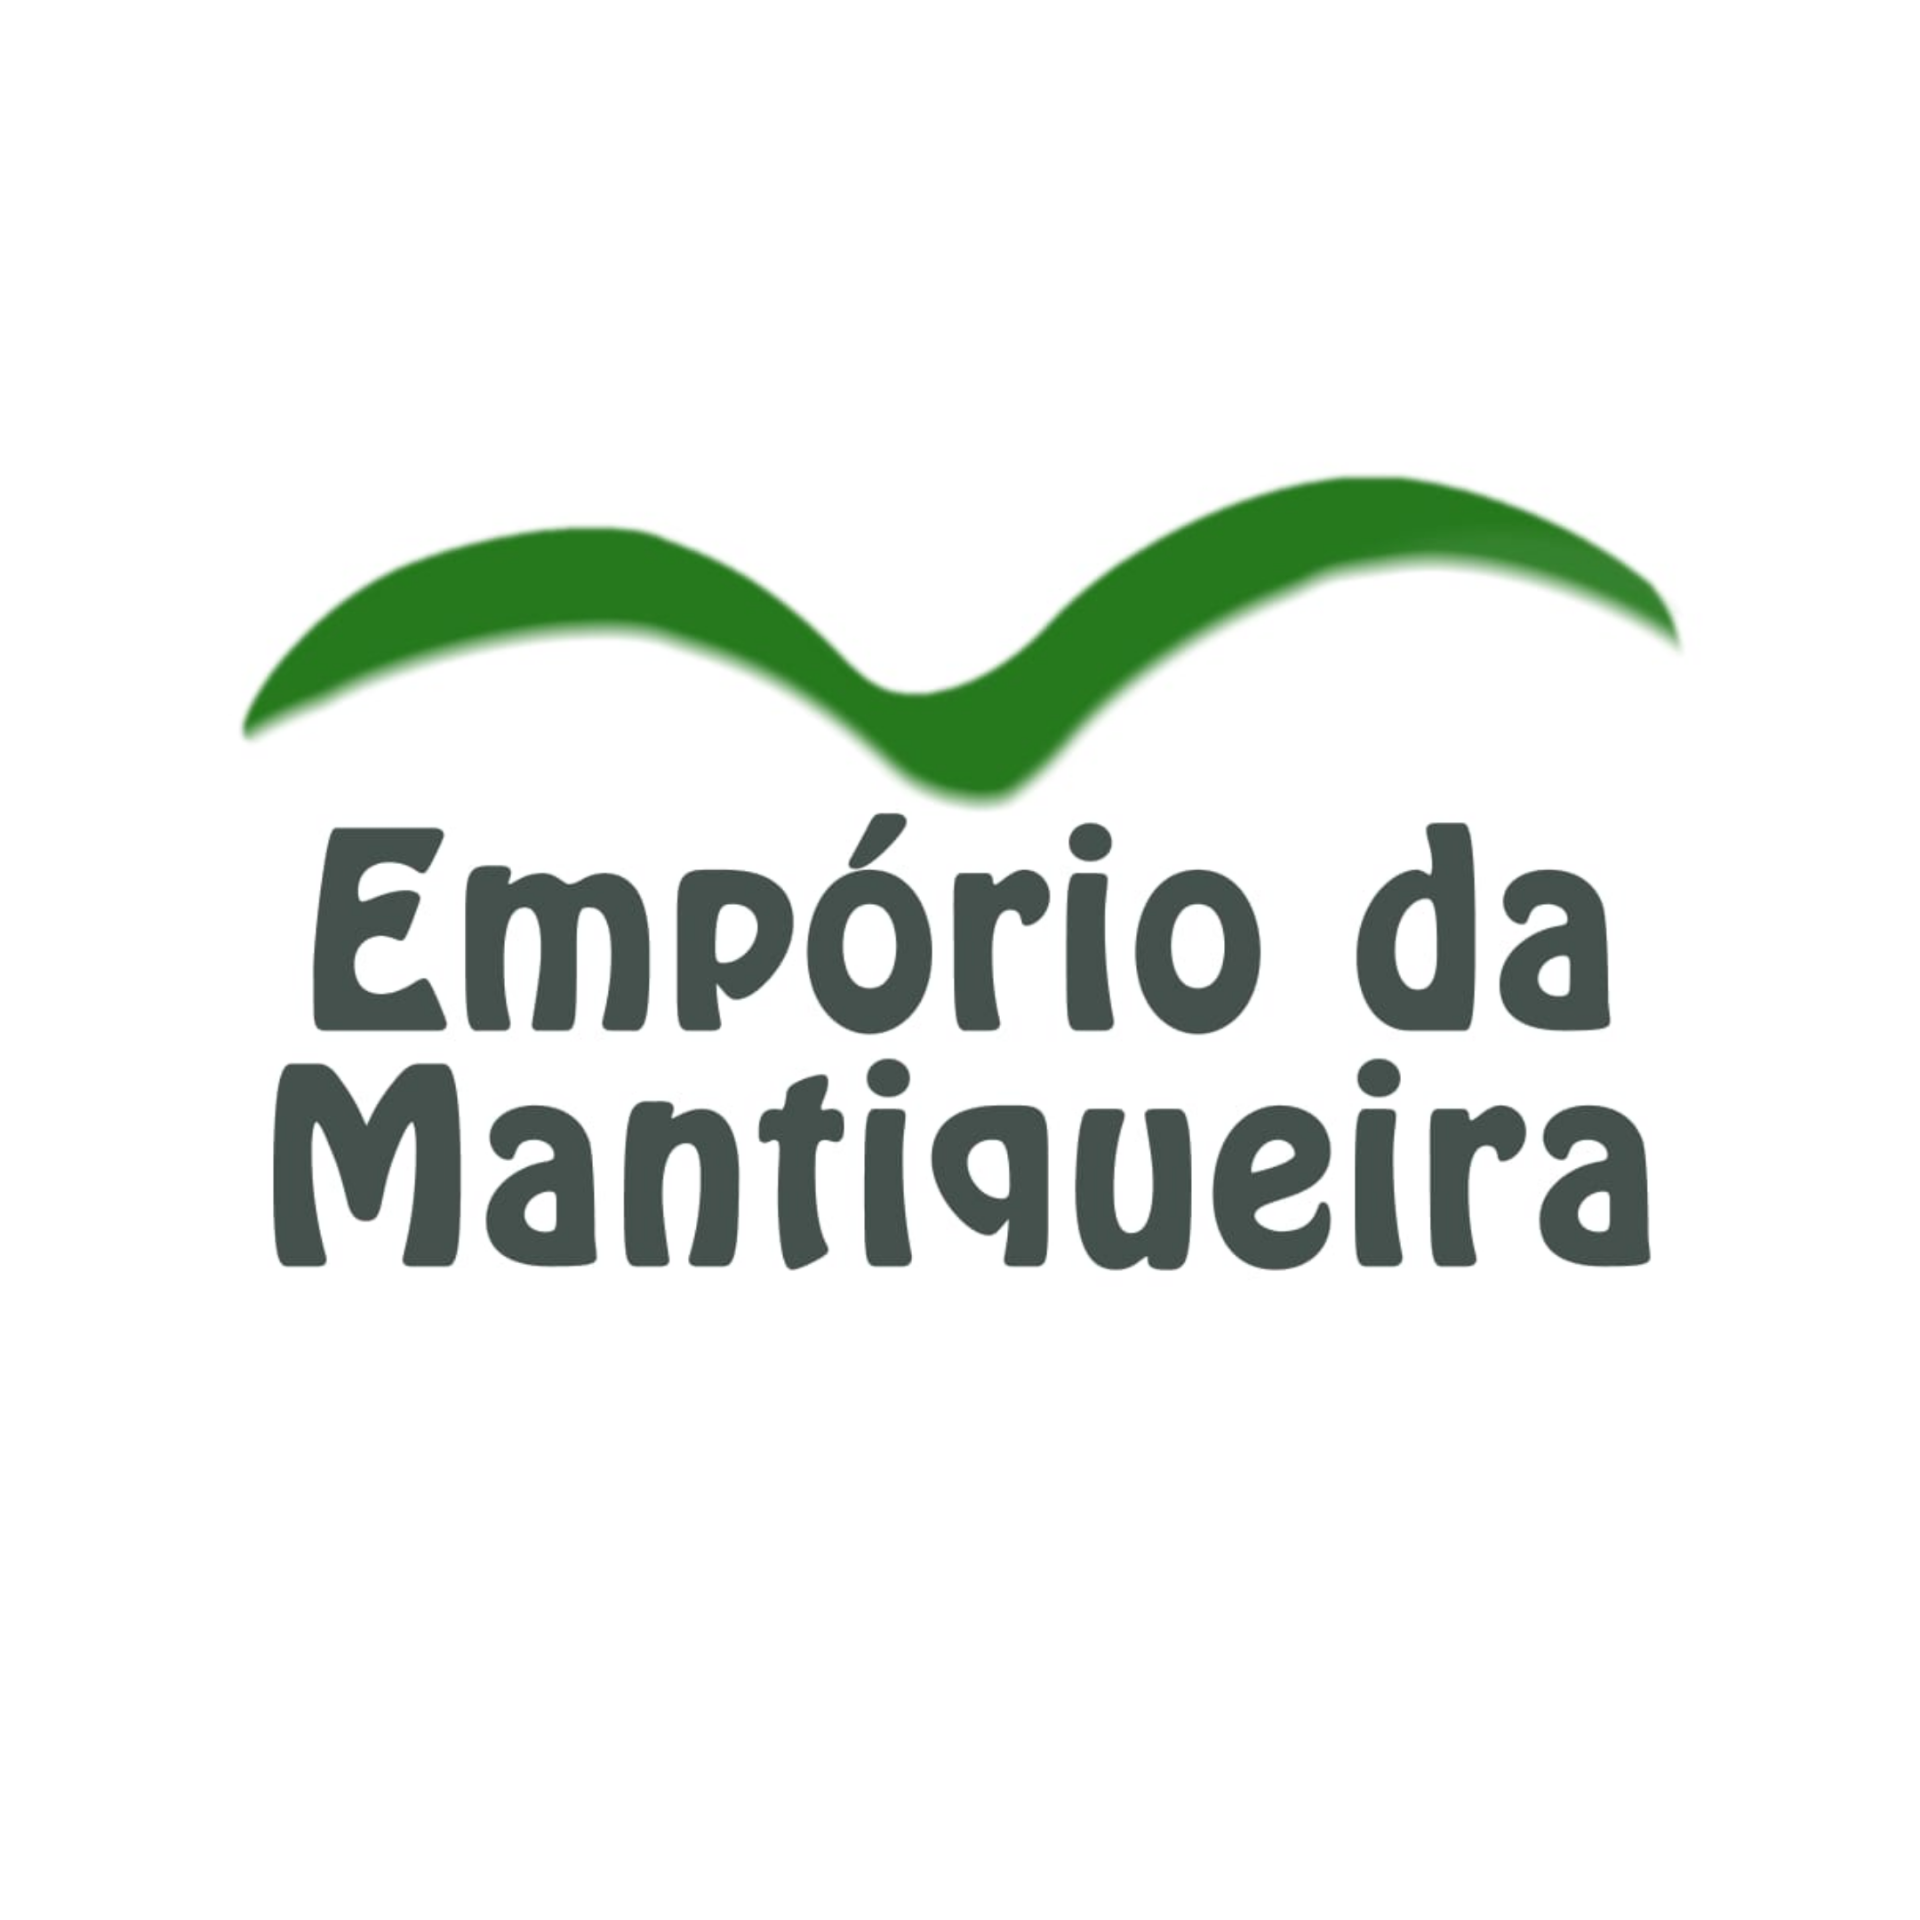 EMPÓRIO DA MANTIQUEIRA